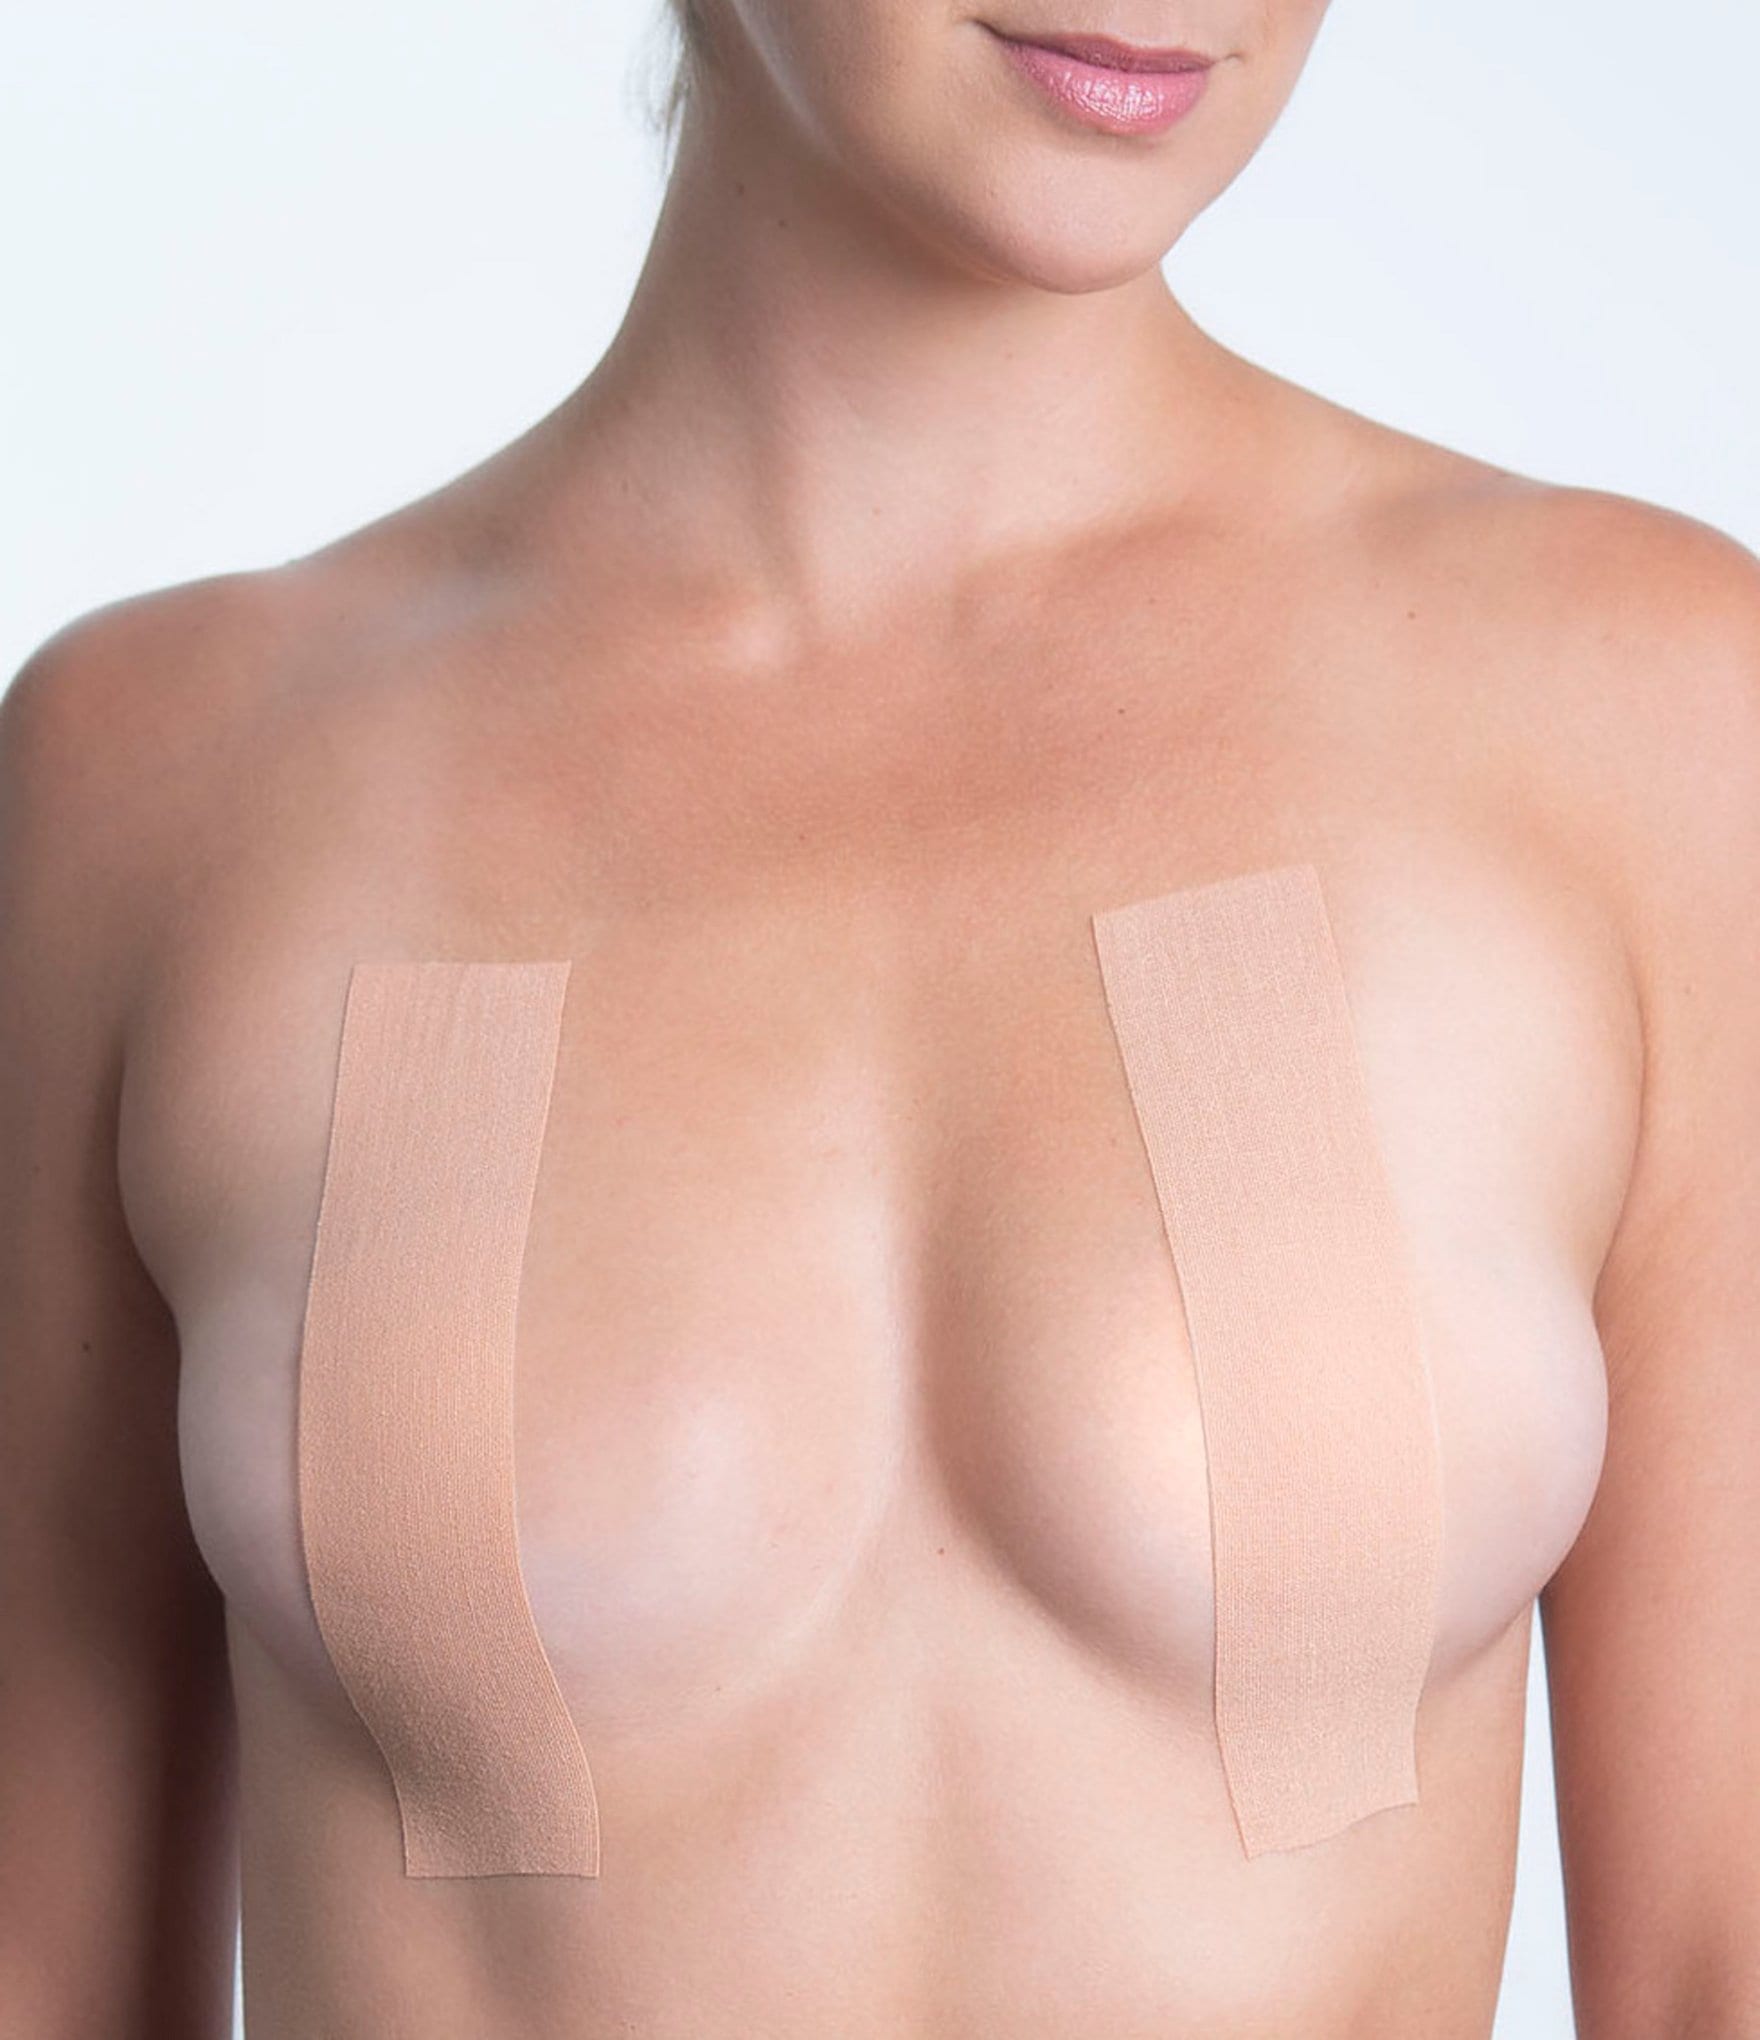 Breast Lift Tape for Backless Dress Swimsuit: Brazil